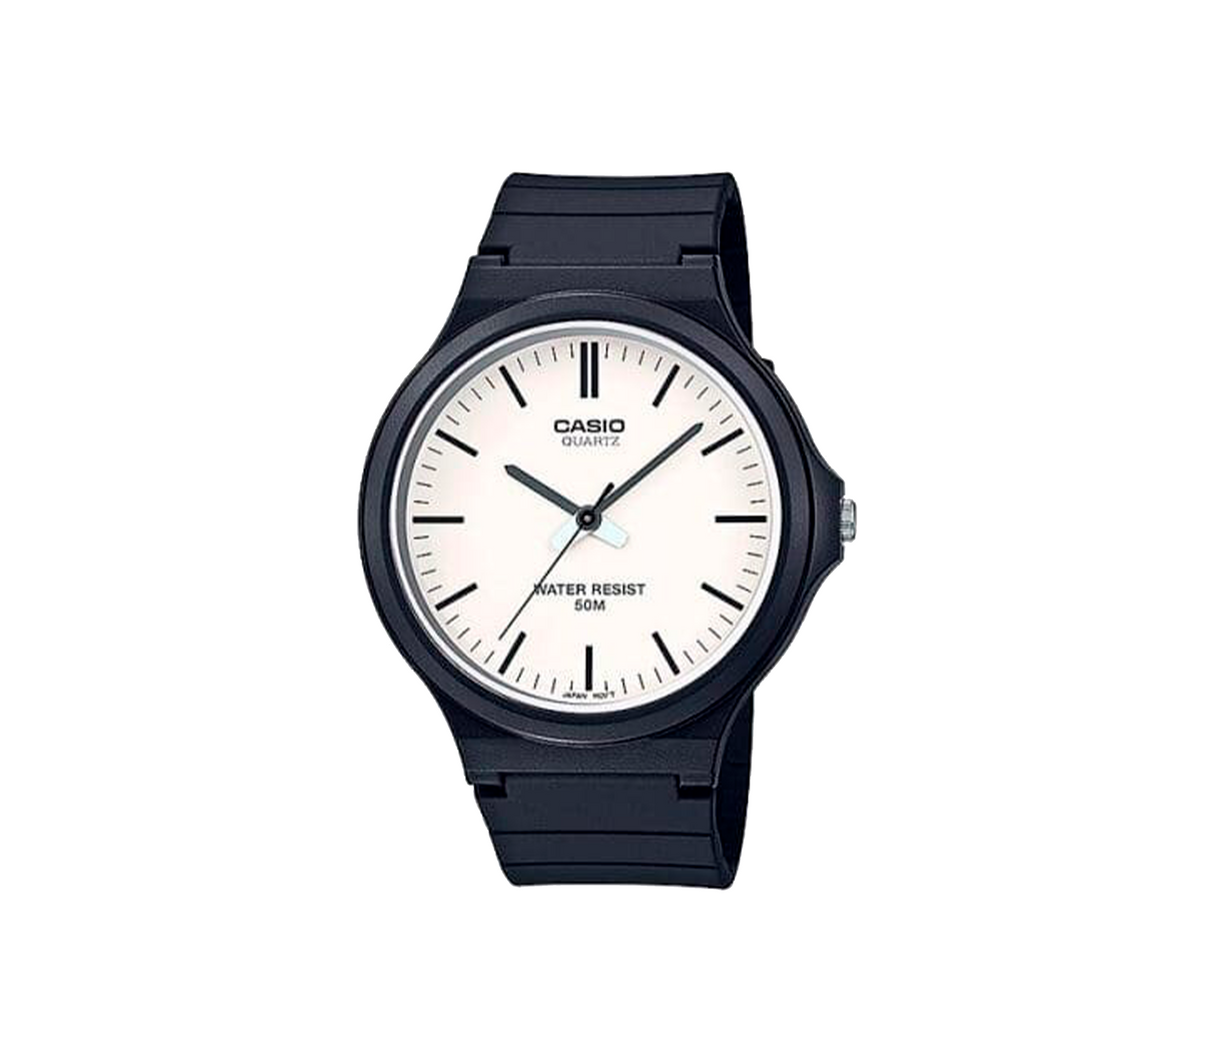 Reloj análogo casual negro/blanco Casio